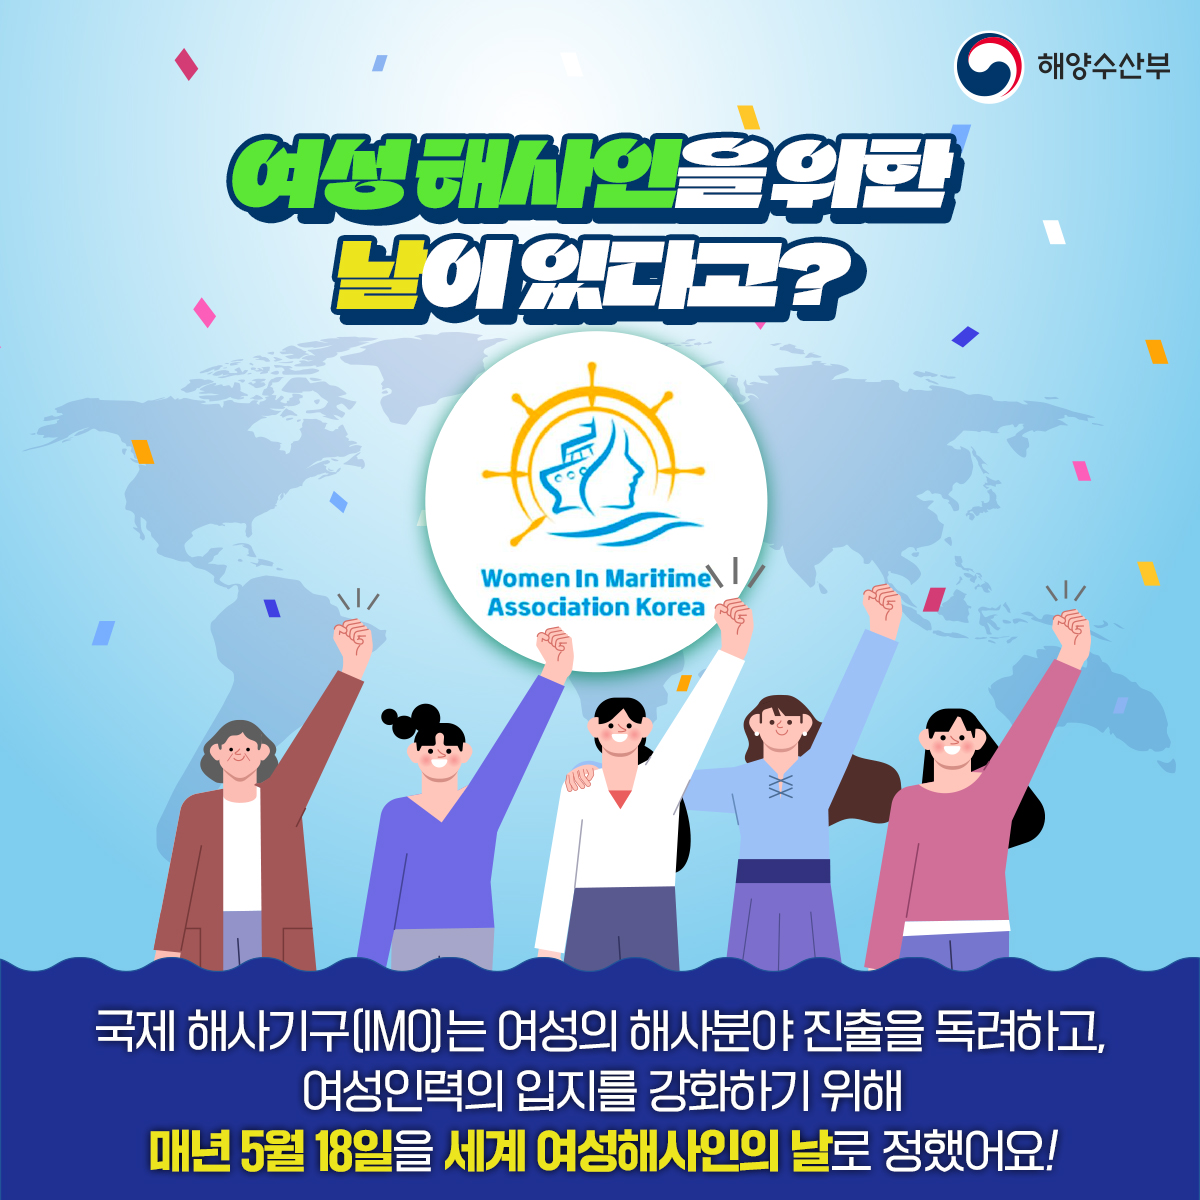 해양수산부 여성해사인을 위한 날이 있다고?Women In Maritime Association Korea 국제 해사기구(IMO)는 여성의 해사분야 진출을 독려하고, 여성인력의 입지를 강화하기 위해 매년 5월 18일을 세계 여성해사인의 날로 정했어요!